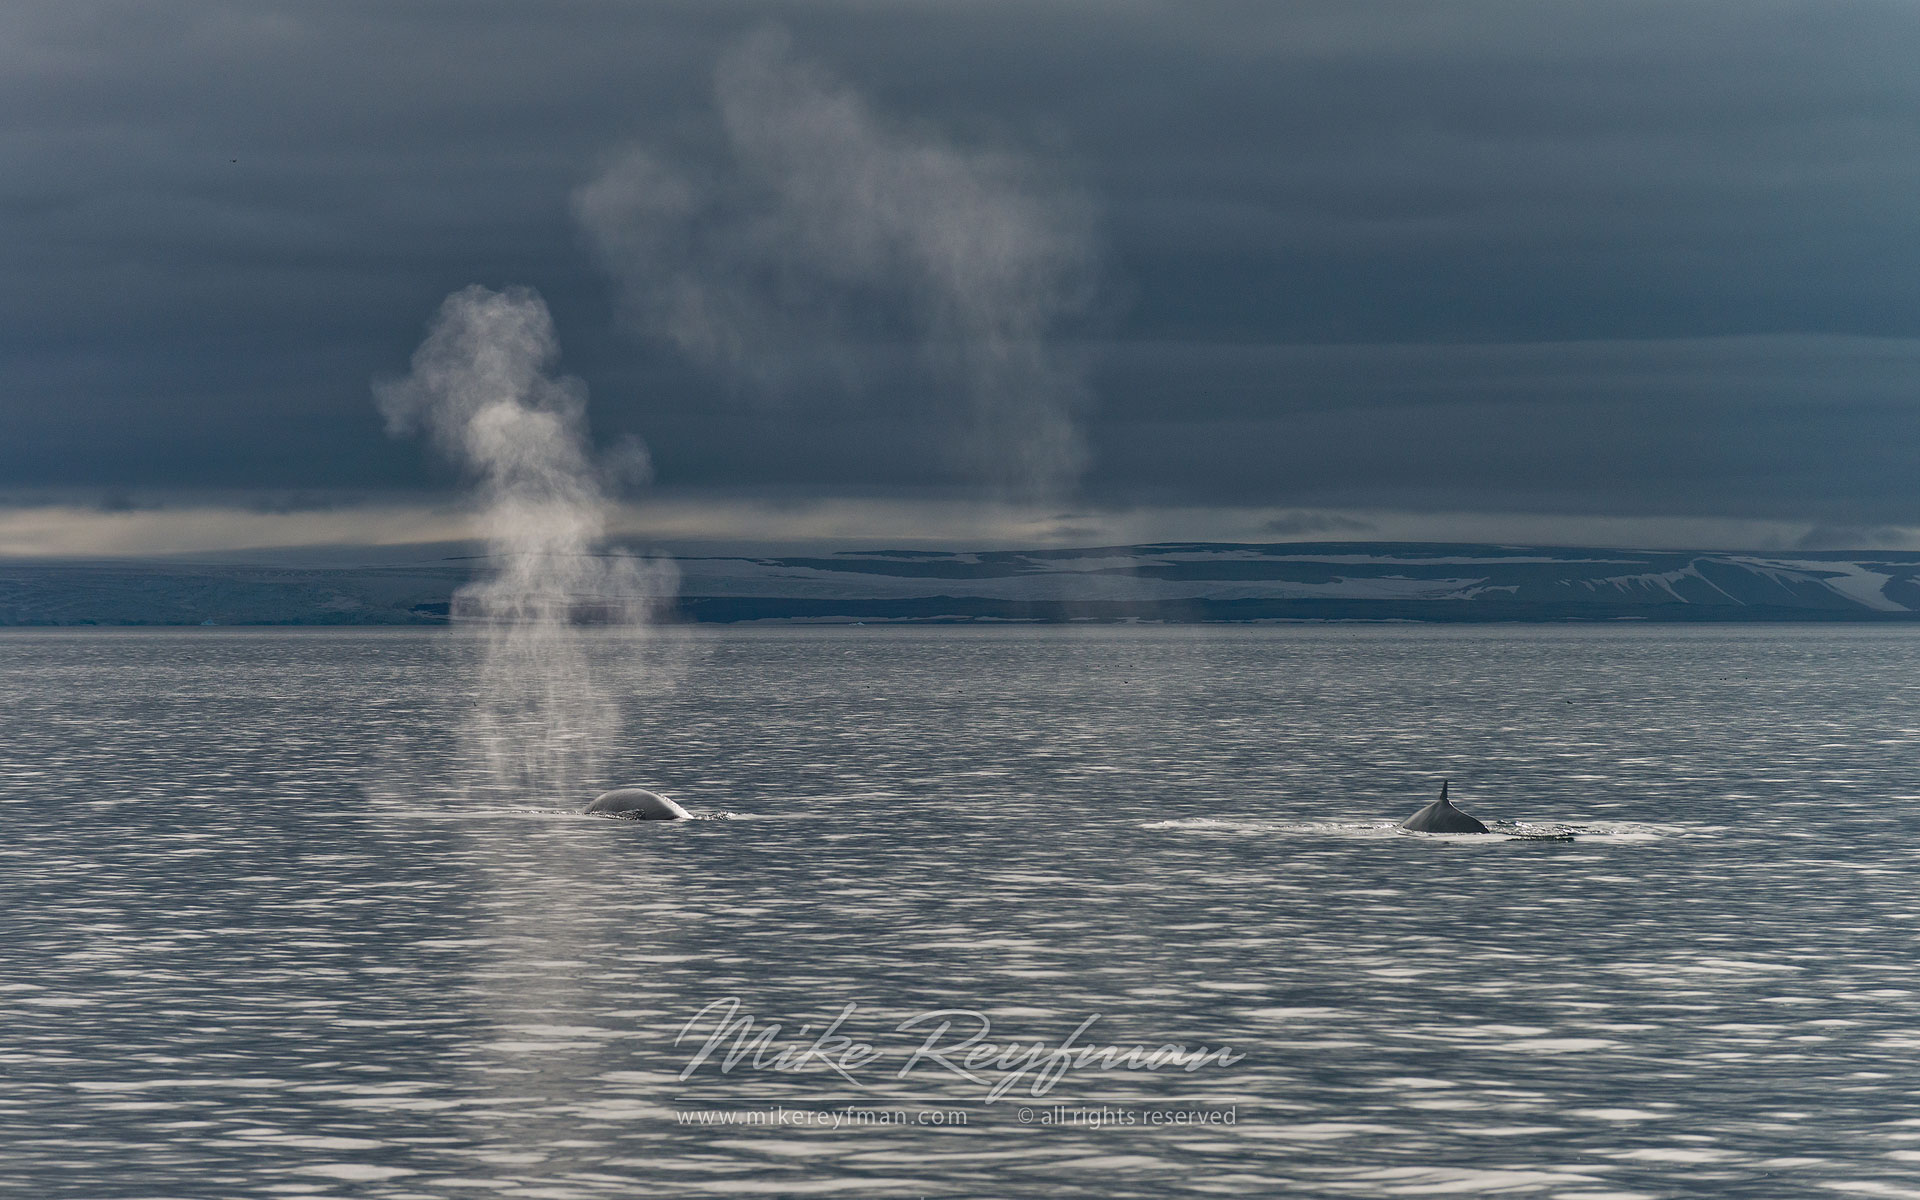 Blue Whales (Balaenoptera musculus) near Spitsbergen, Svalbard. - Wildlife-Svalbard-Spitsbergen-Norway - Mike Reyfman Photography